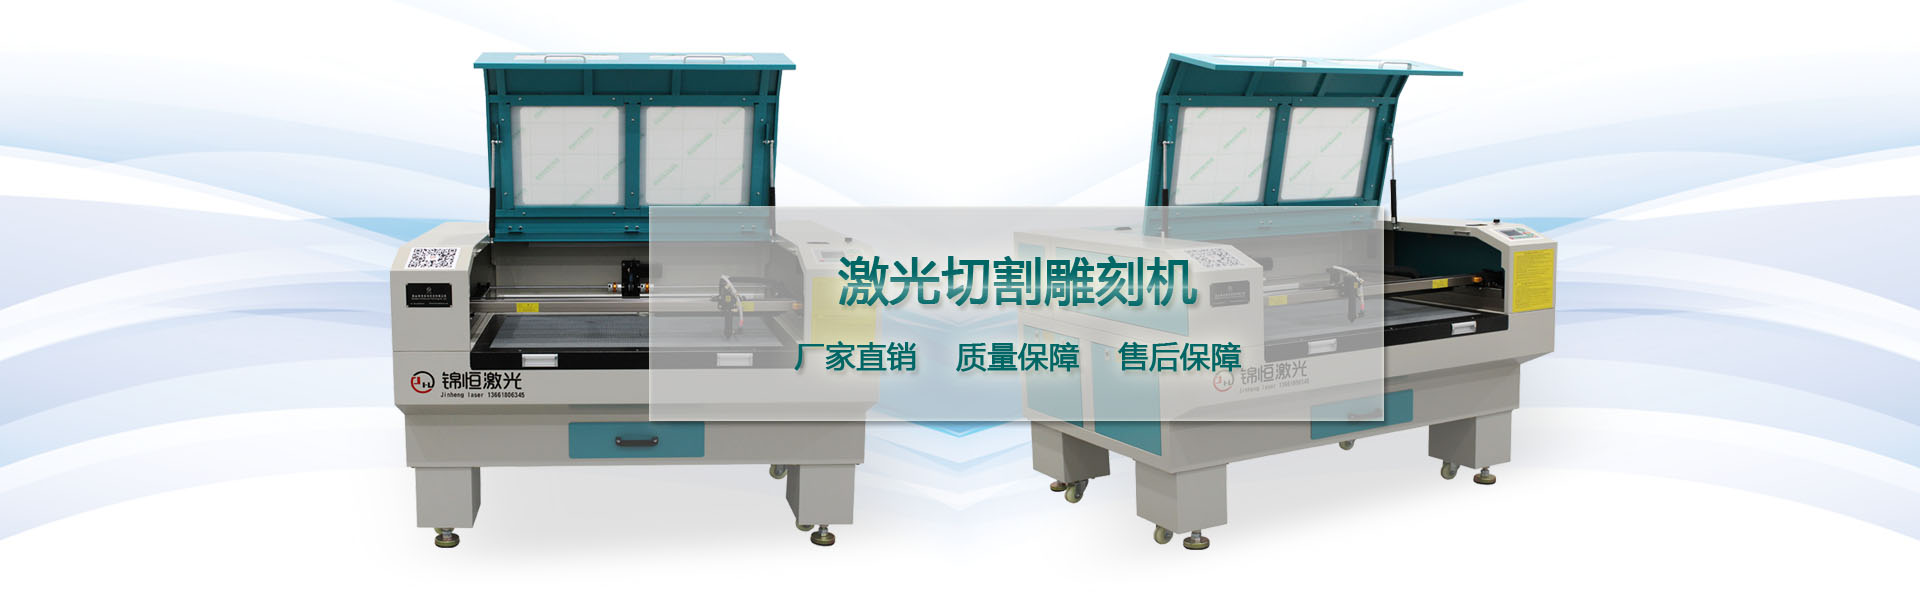 激光切割机雕刻机1280 品牌厂家锦恒激光科技